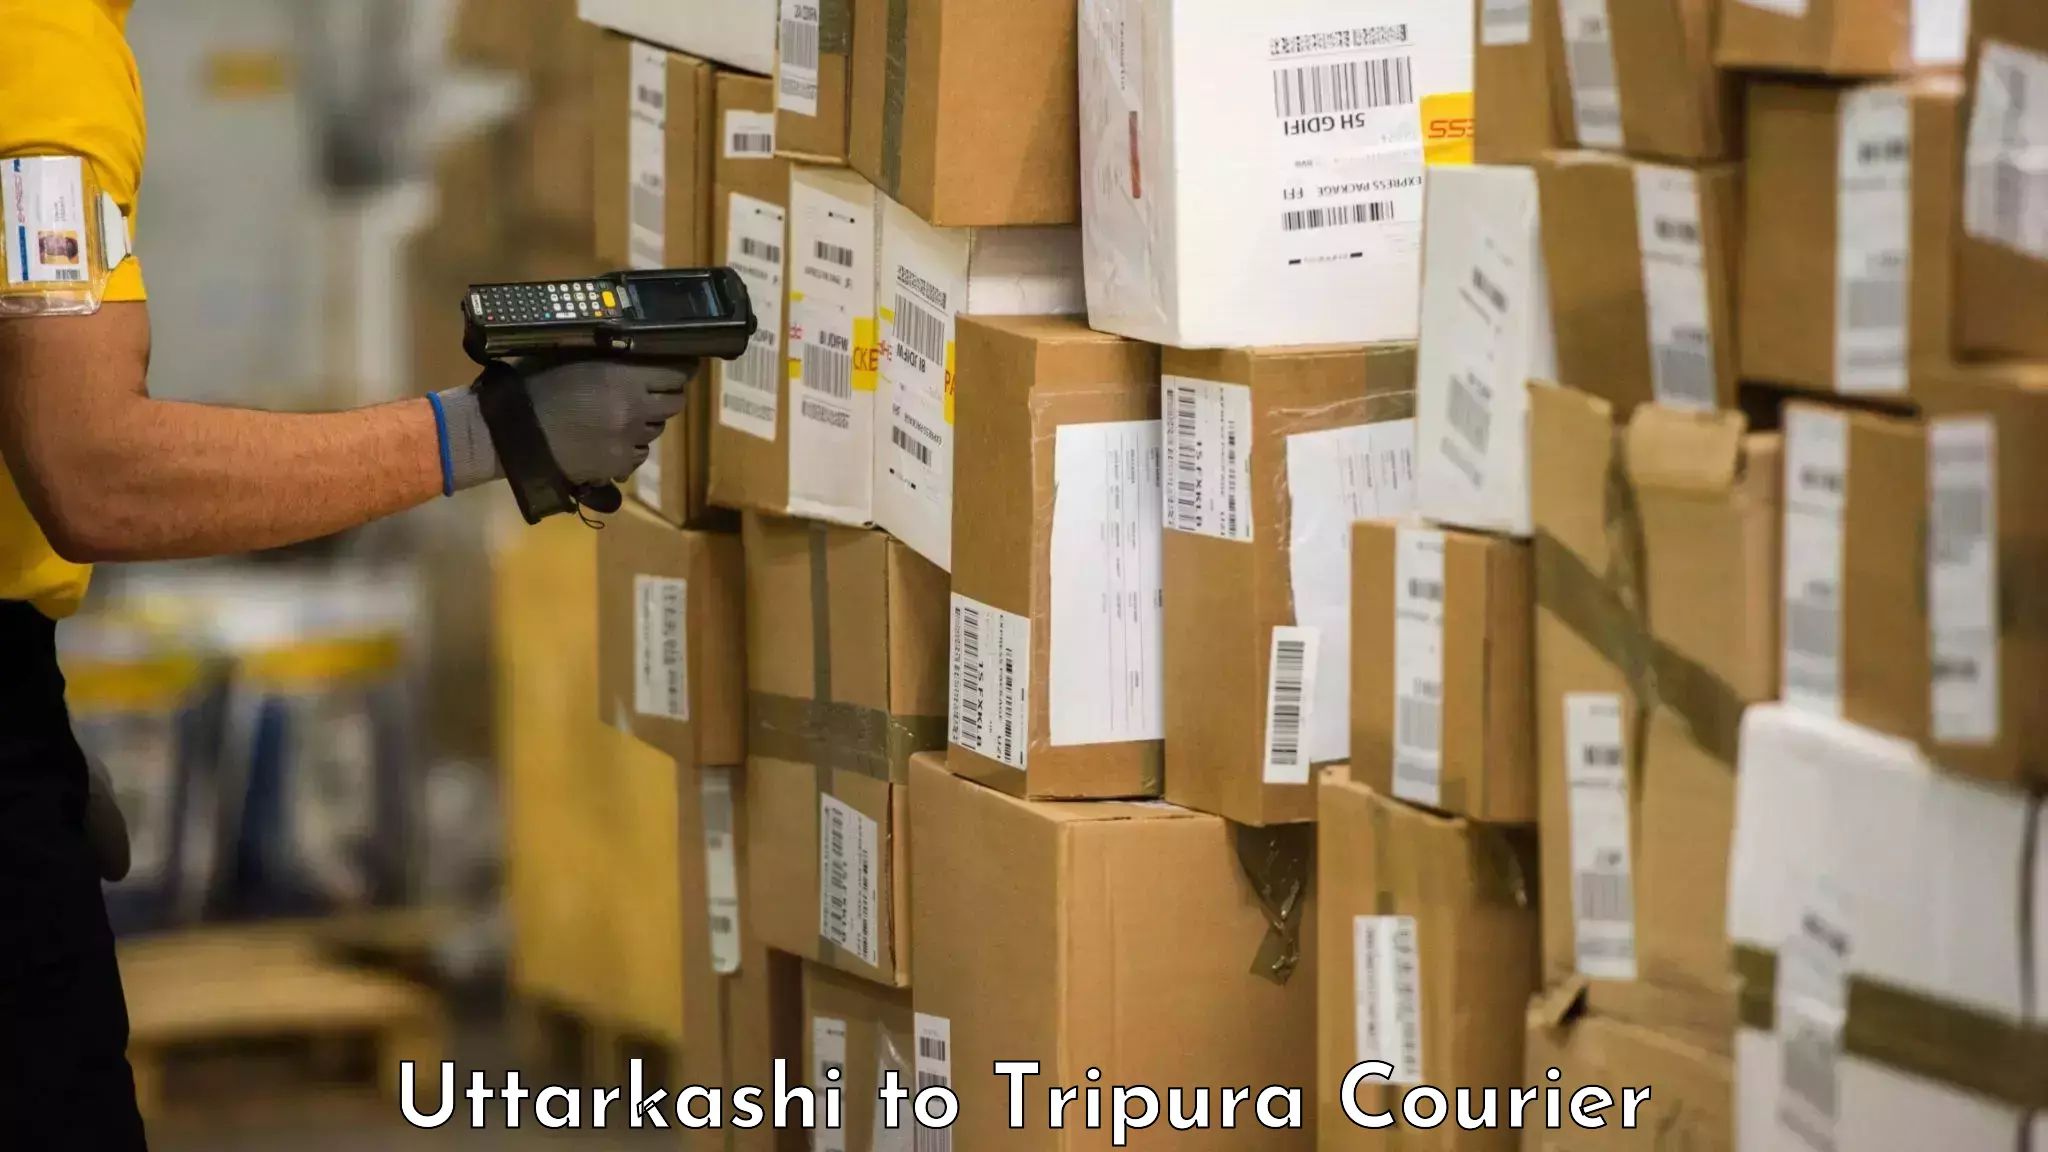 Hassle-free luggage shipping in Uttarkashi to Udaipur Tripura